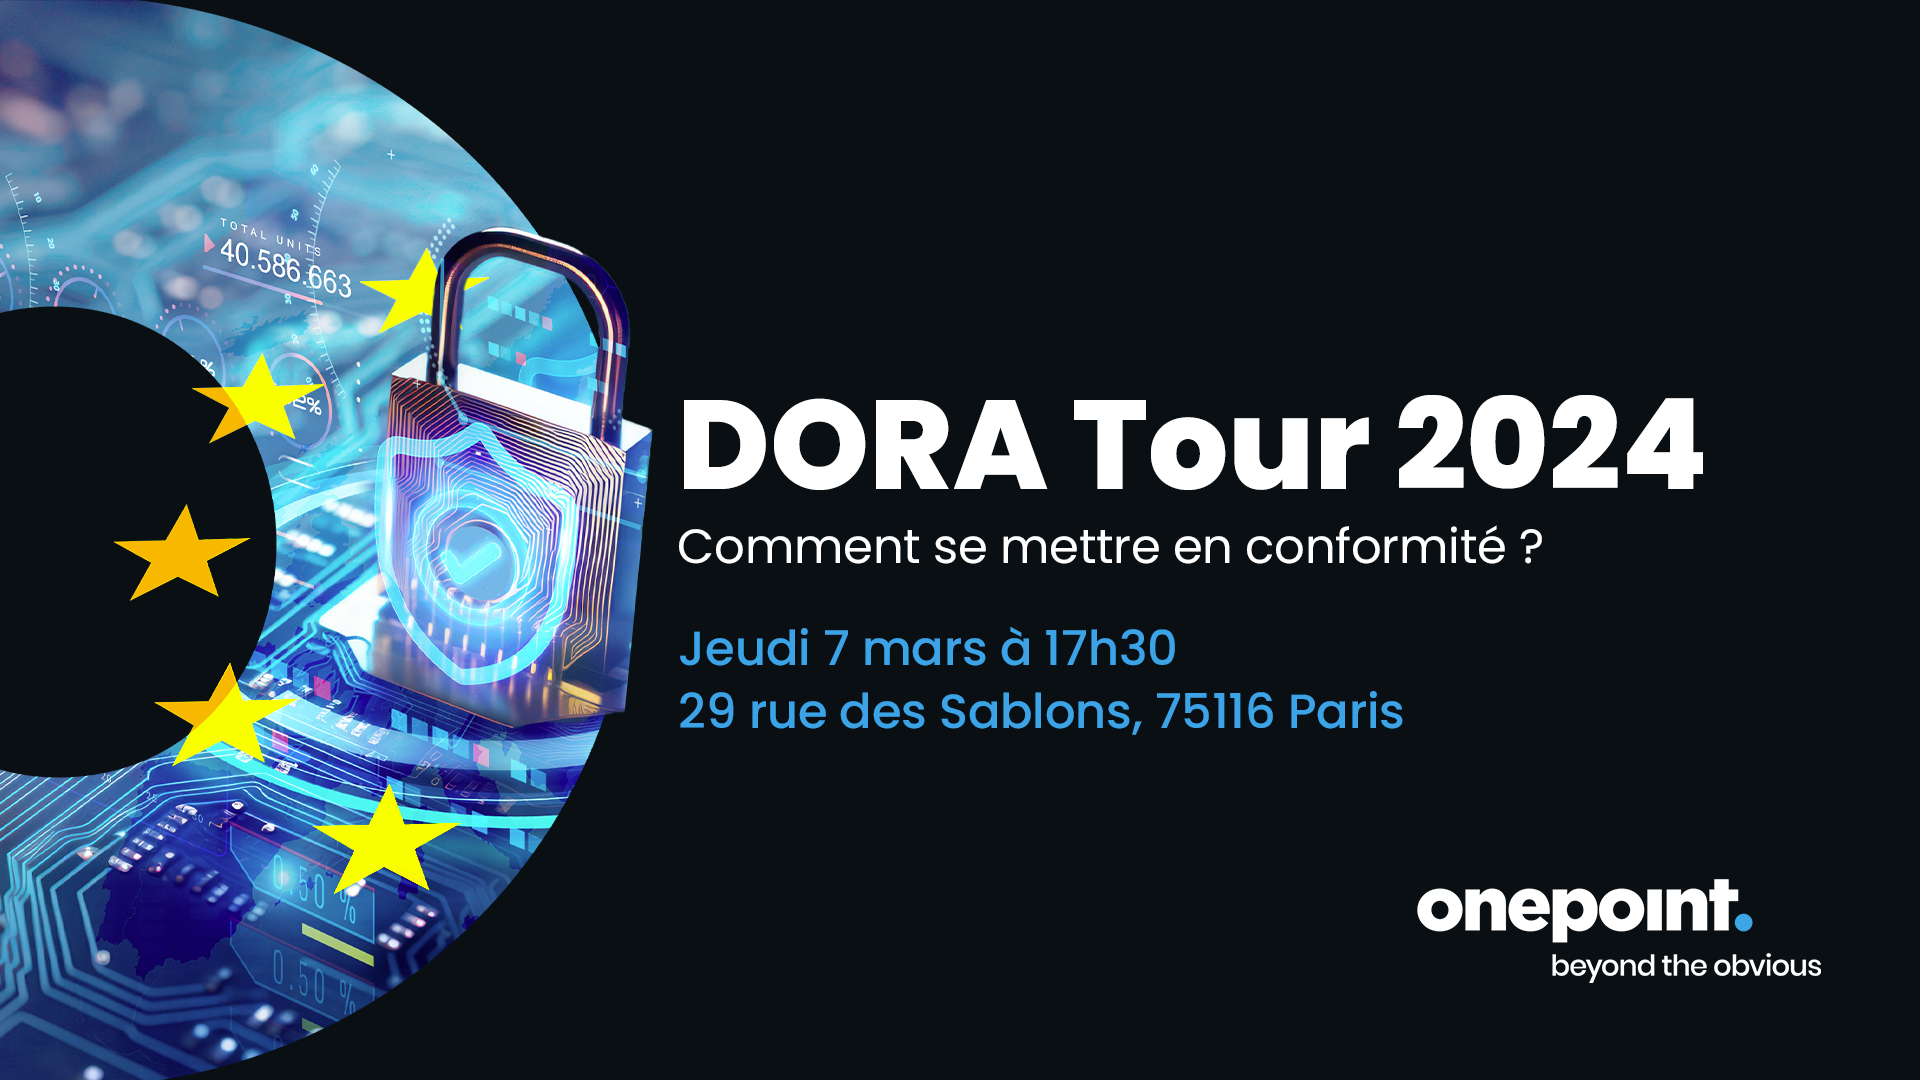 DORA Tour 2024 : Comment se mettre en conformité ? Rendez-vous chez Onepoint à Paris le 7 mars à 17h30